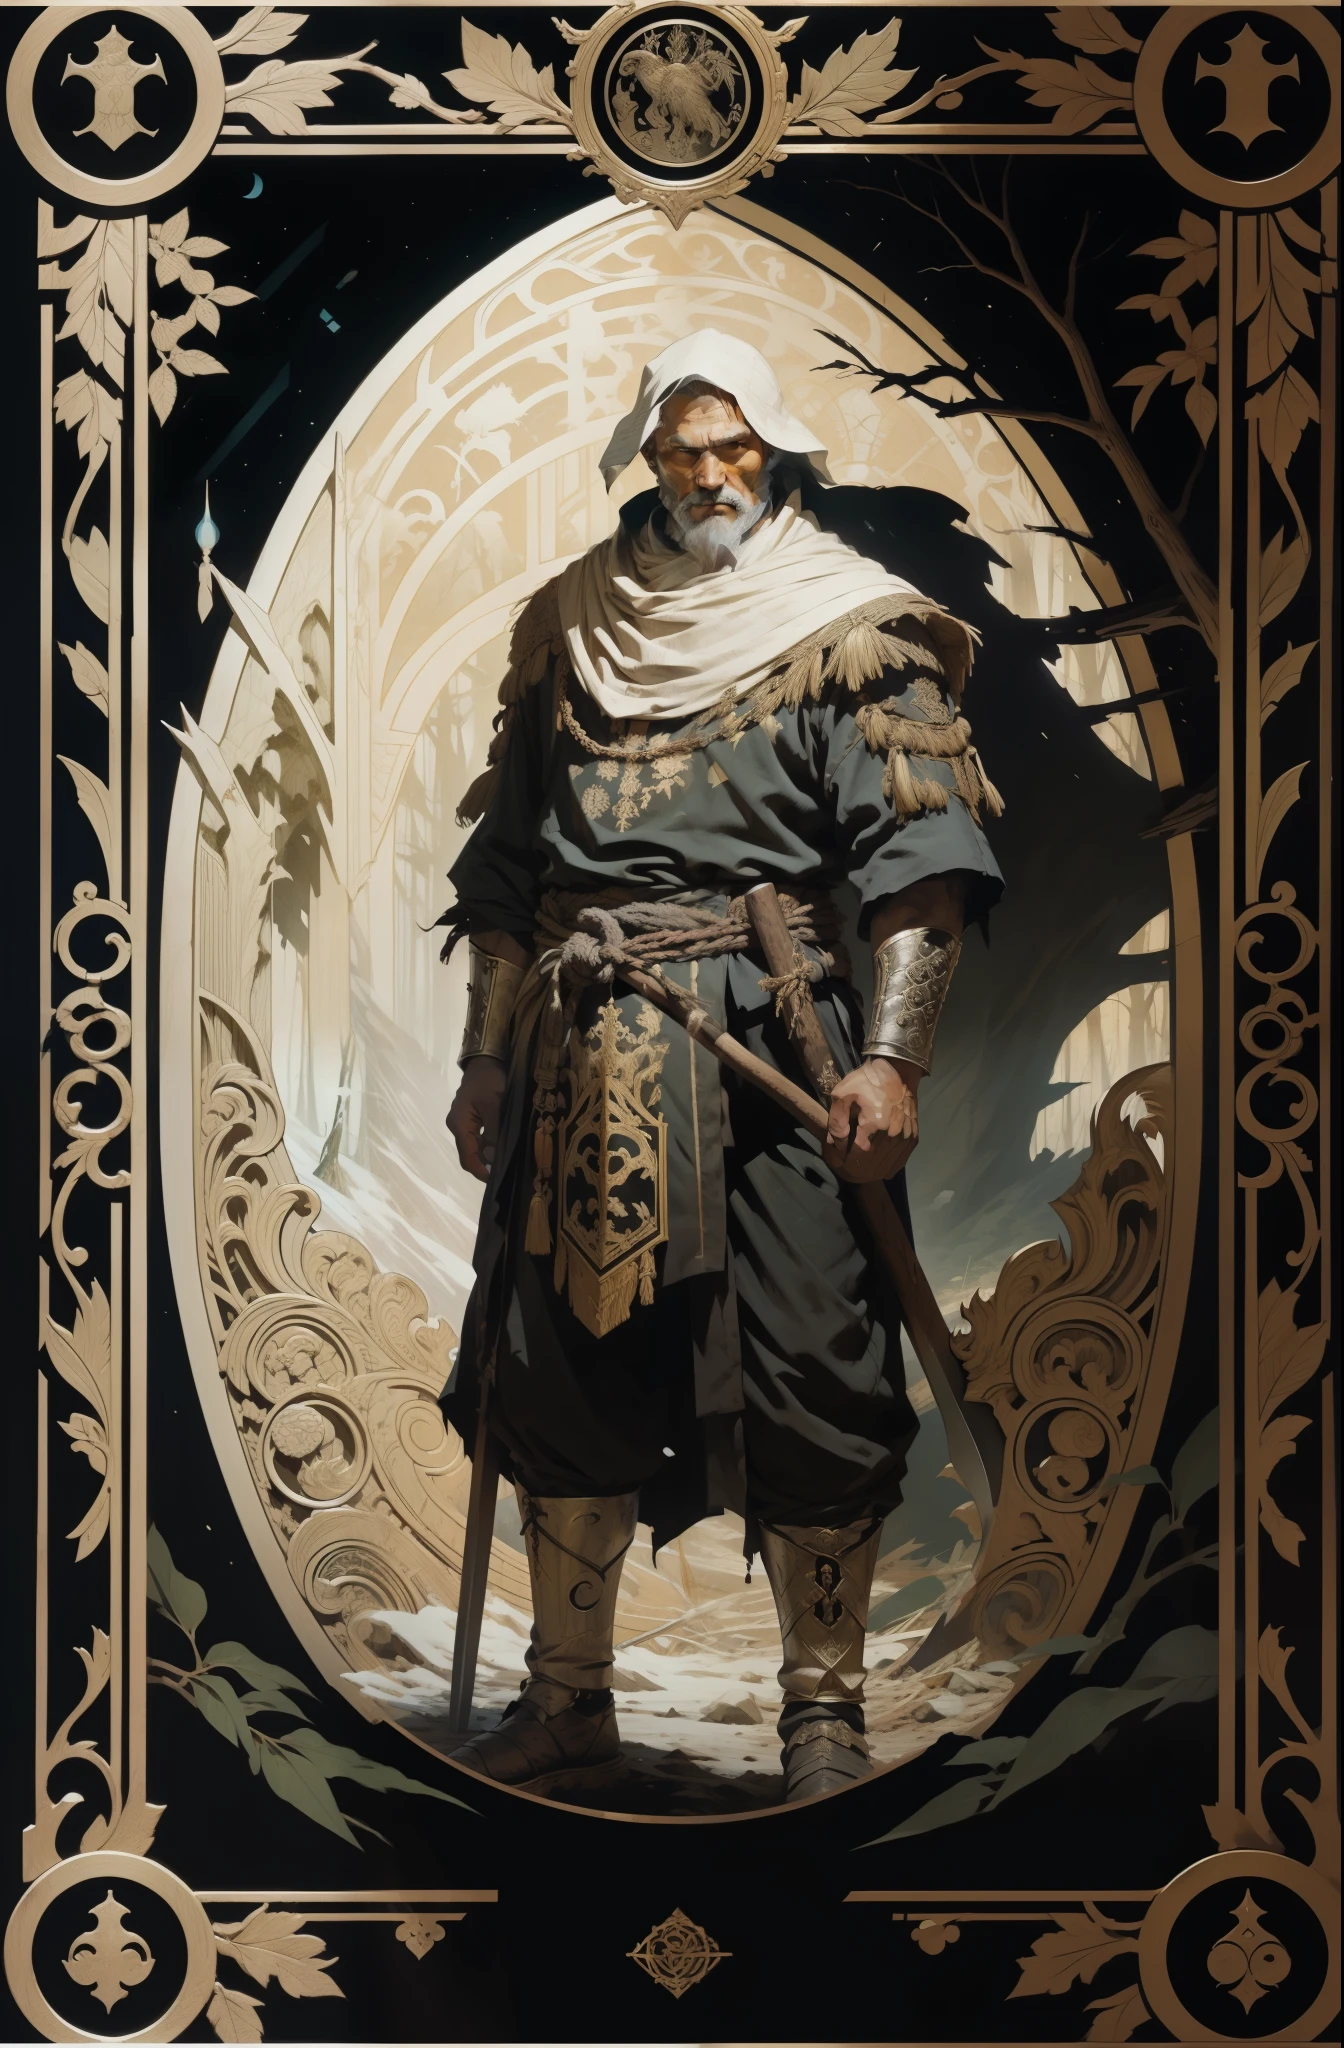 Мужчина, в традиционной одежде народов Севера, с топором в руках, темный лесной фон, Стиль Таро, средневековая узорчатая рамка